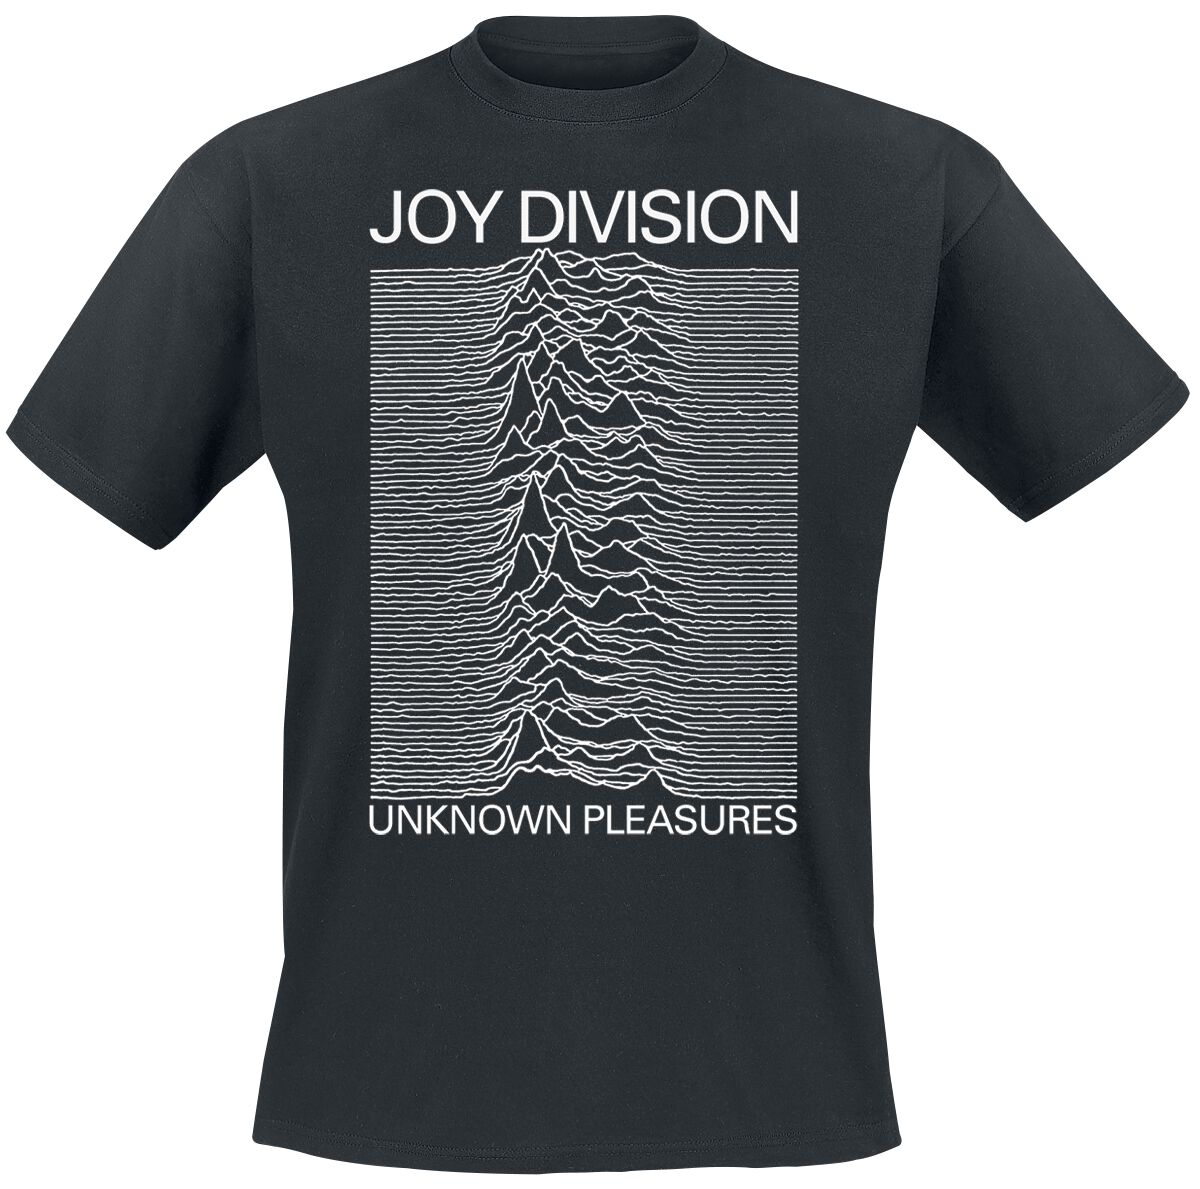 Joy Division T-Shirt - Unknown pleasures - S bis XXL - für Männer - Größe S - schwarz  - Lizenziertes Merchandise!